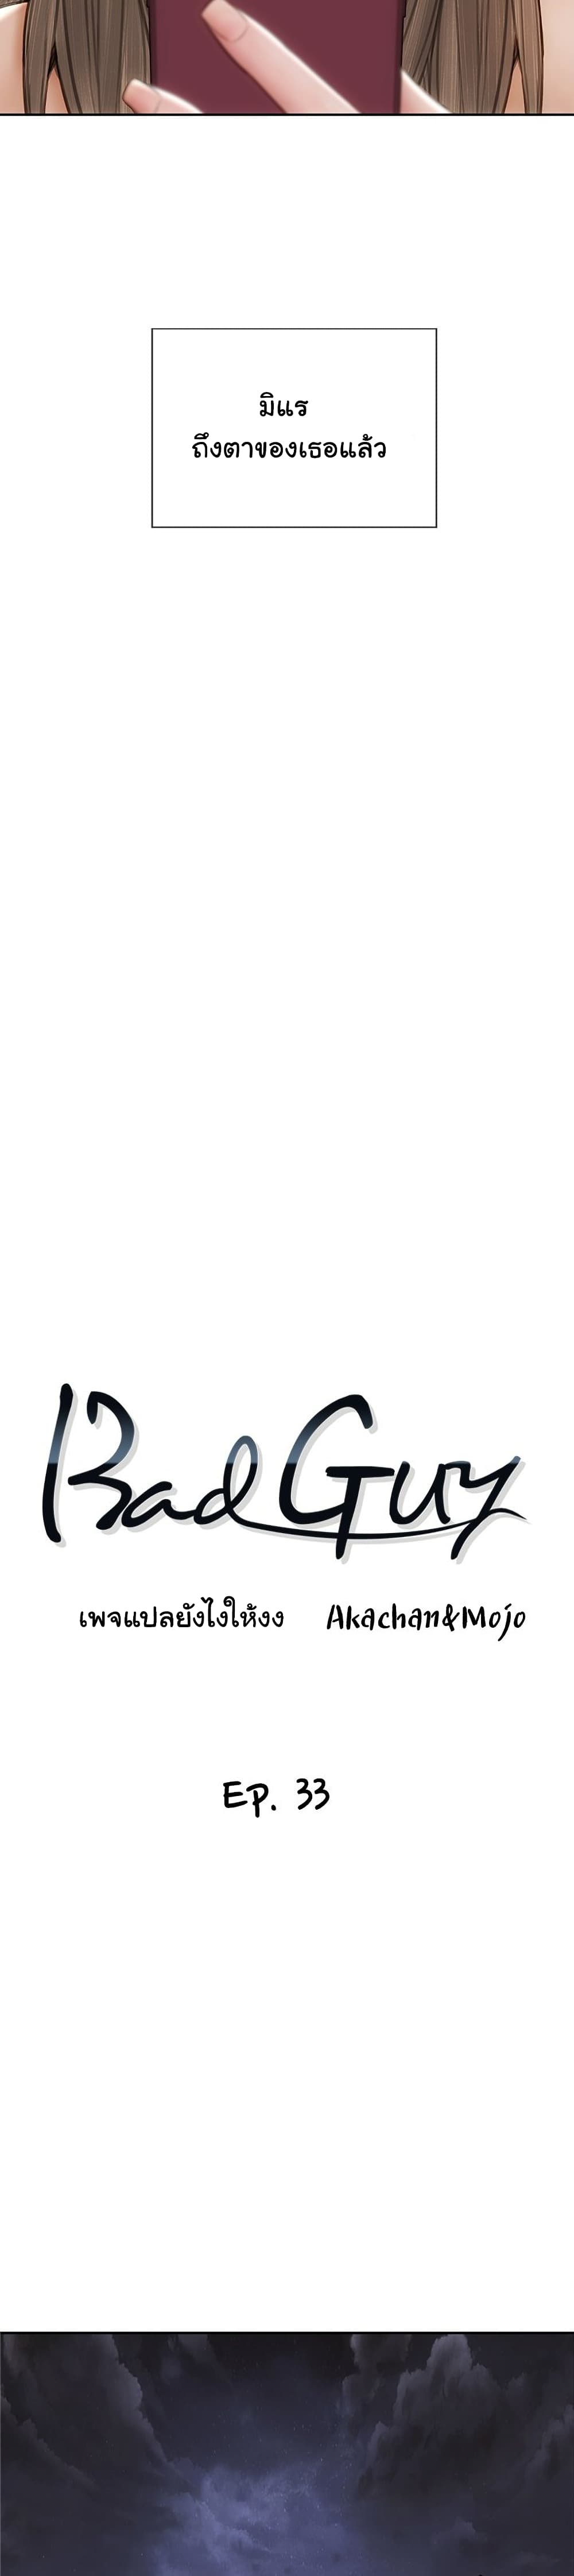 Bad Guy Revenge 33 (10)